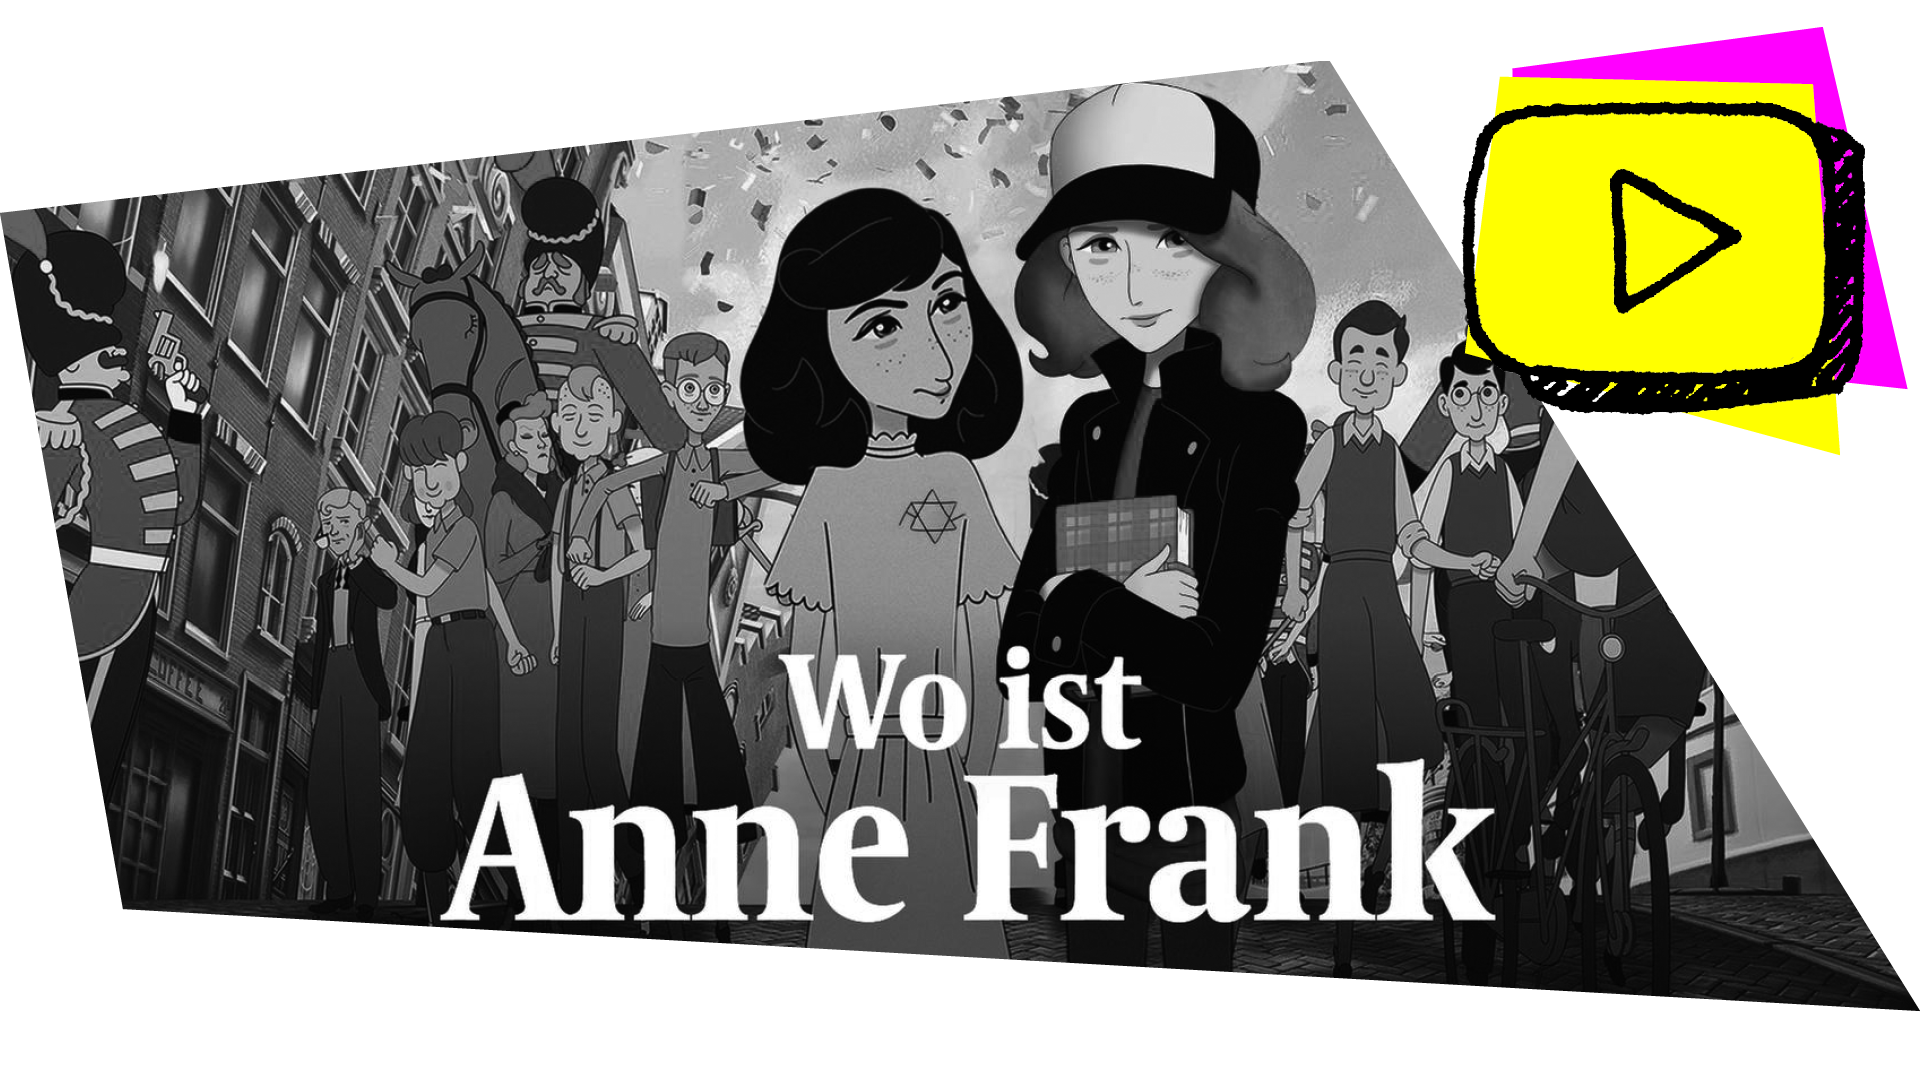 Grafik: Unterrichtsmaterial: Wo ist Anne Frank 